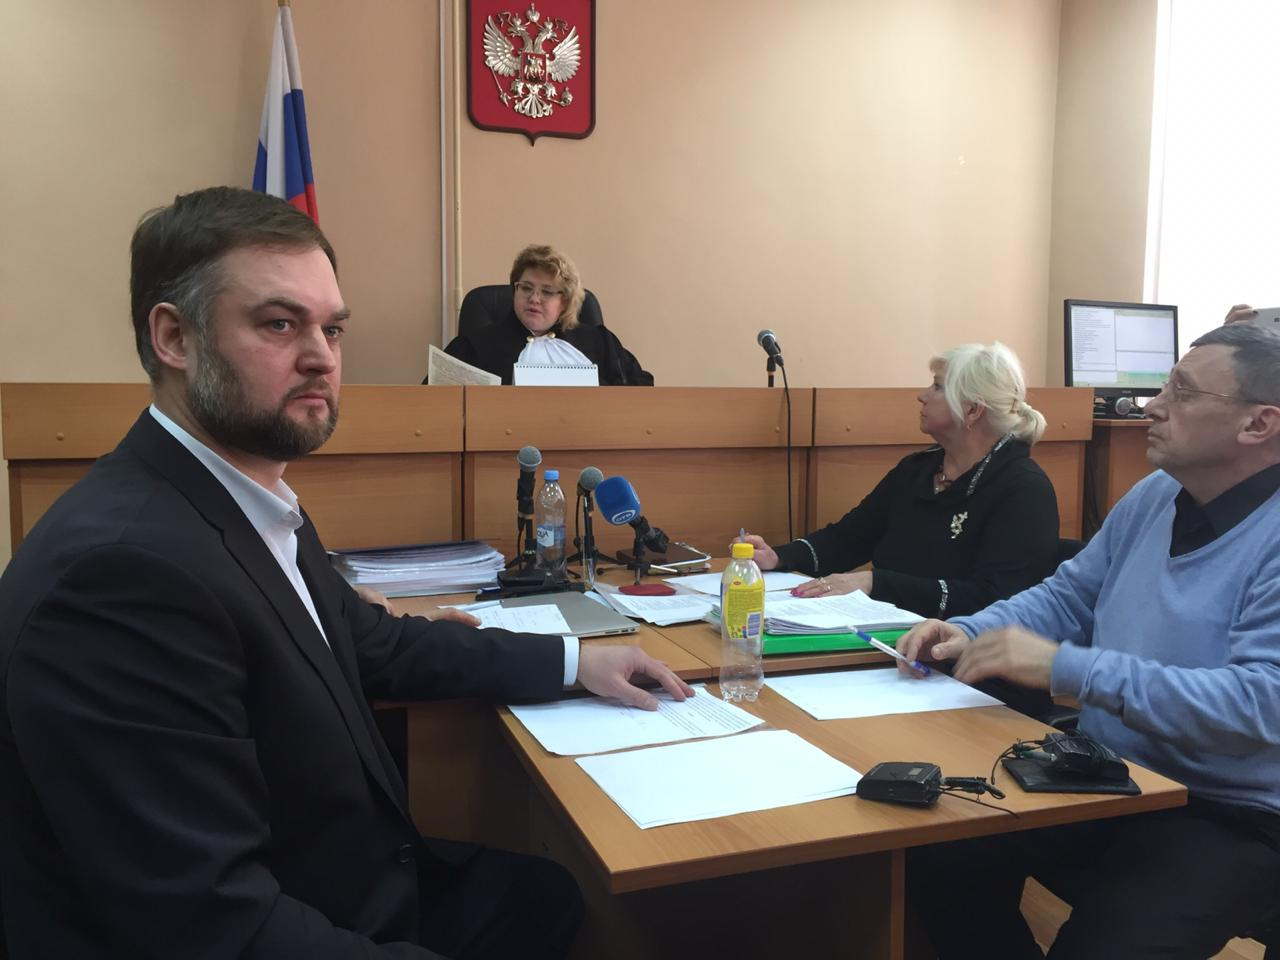 Иван Волков рассказал, что в ходе суда всплыли неожиданные подробности по кредиту